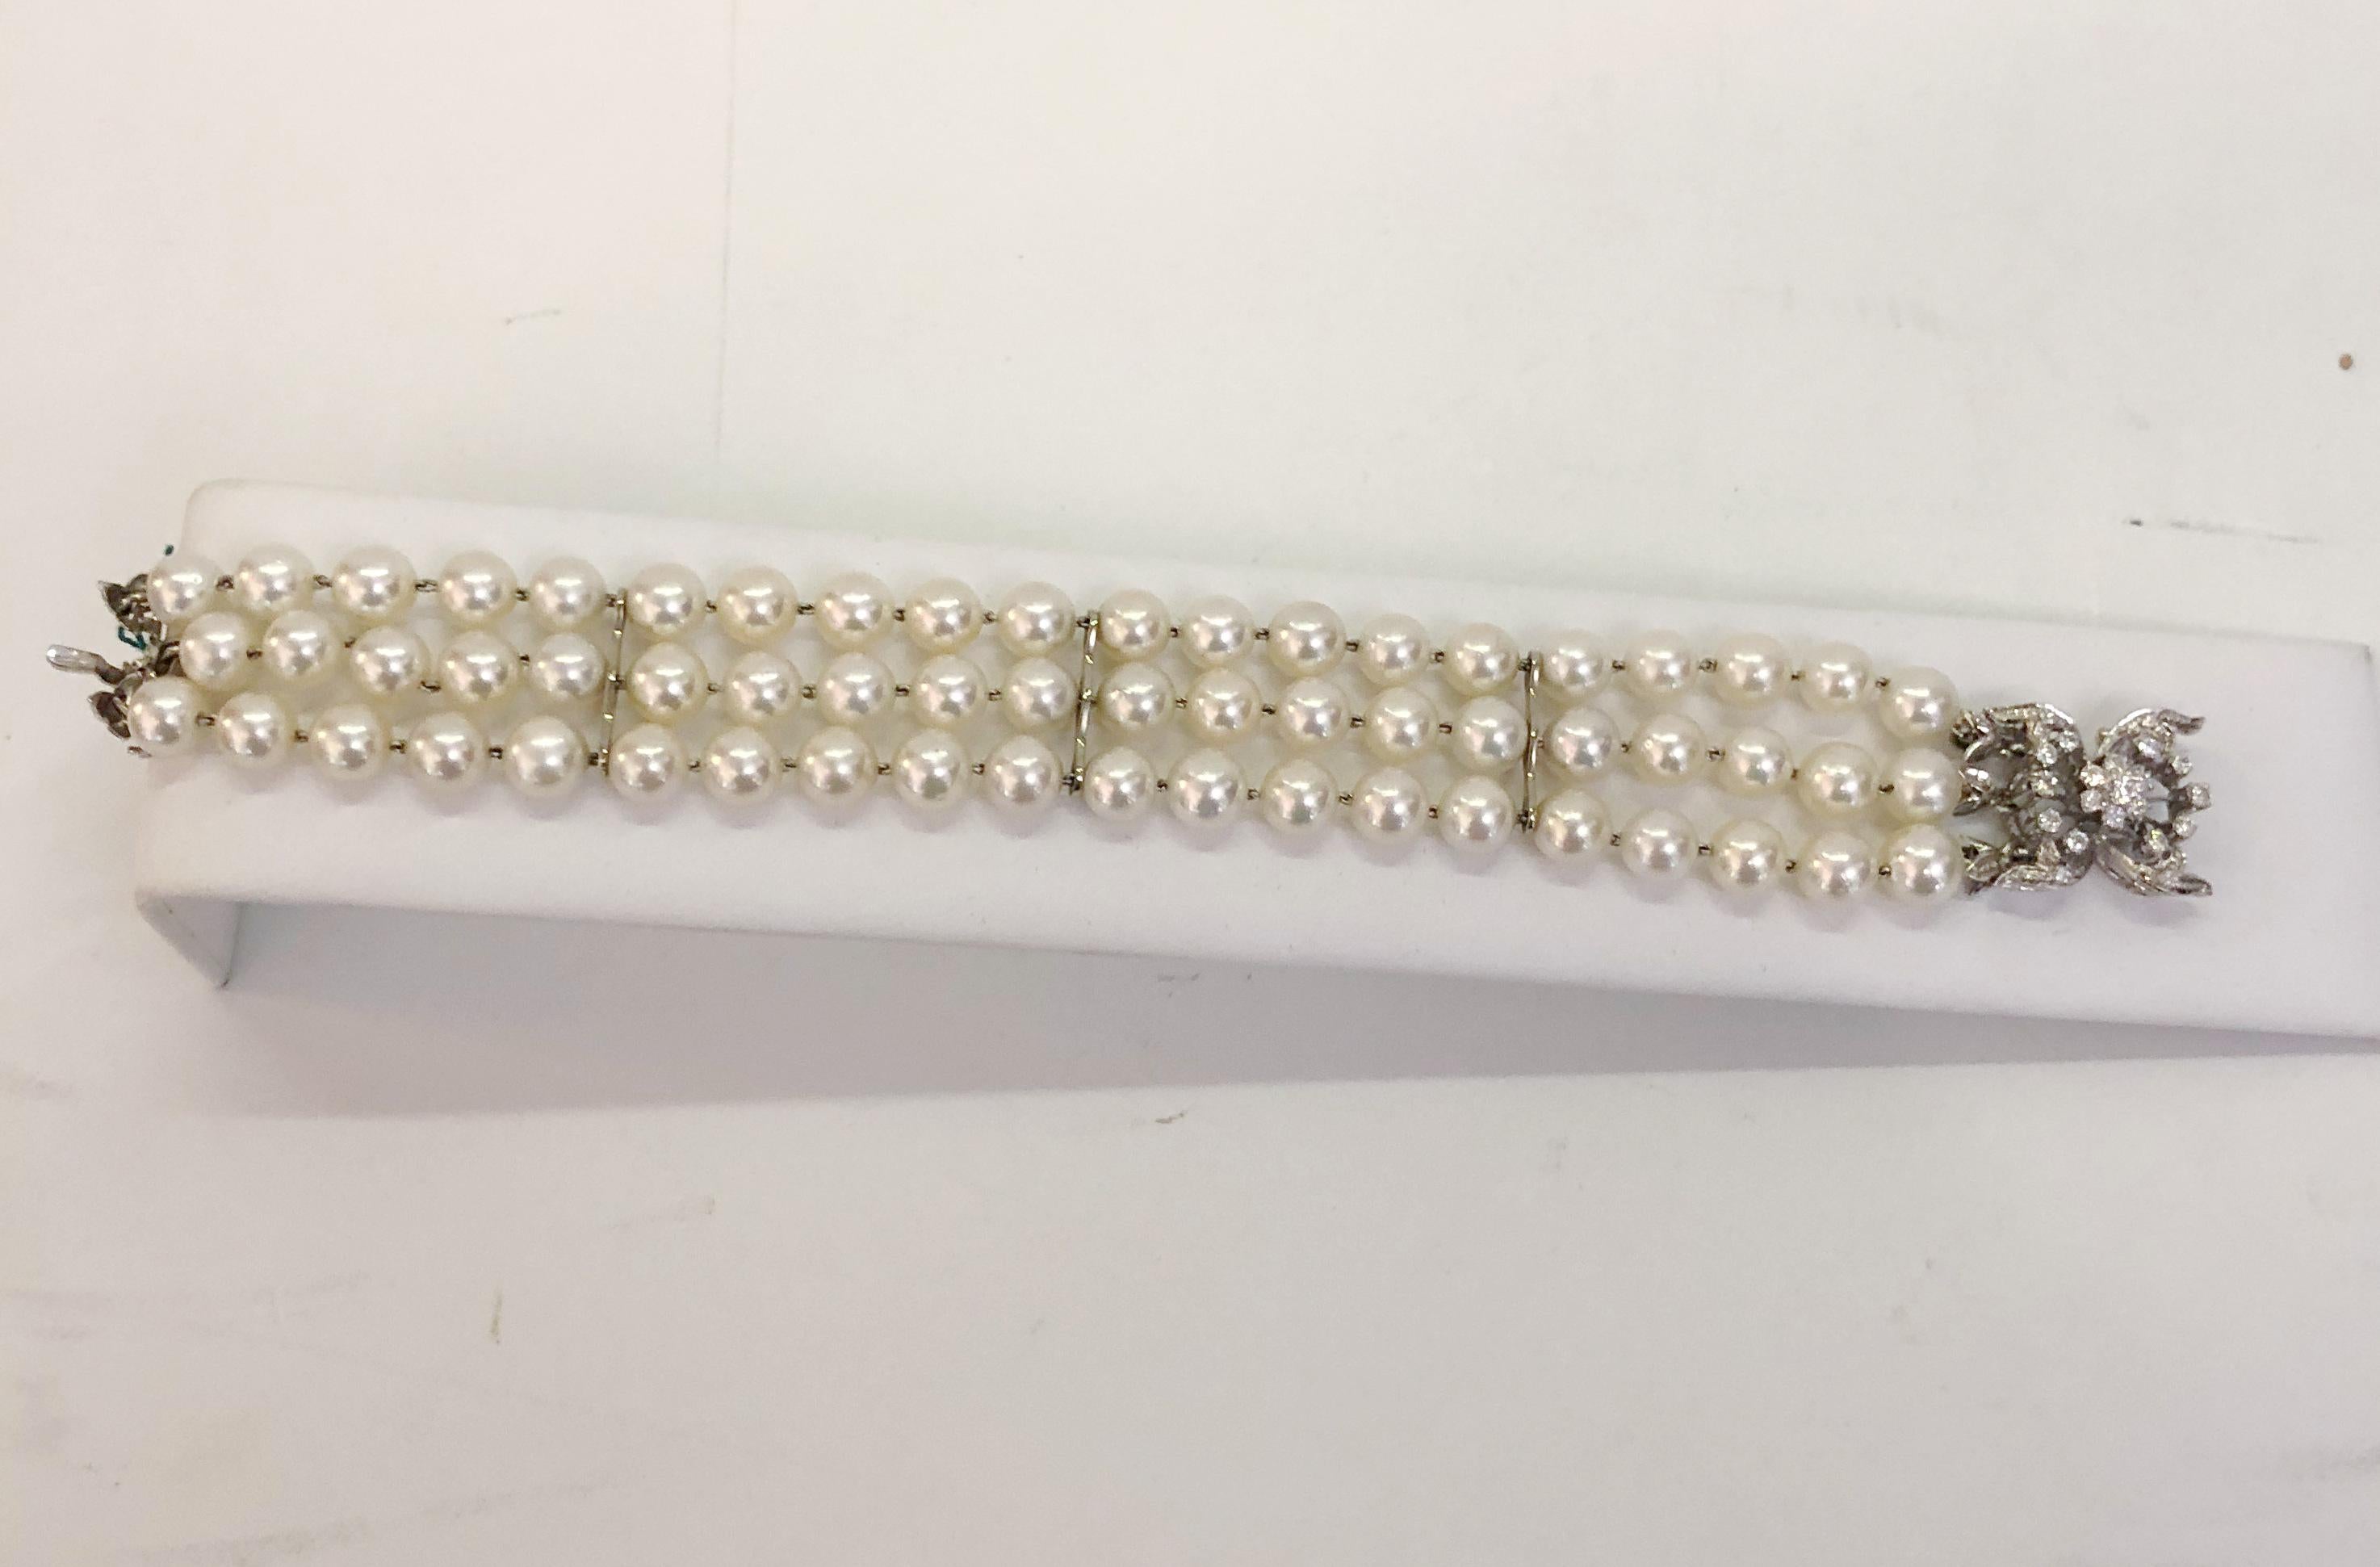 Vintage-Armband mit drei Strängen aus japanischen Perlen, gebunden mit 18 Karat Weißgold, mit einem Verschluss ebenfalls aus Weißgold und 0,4 Karat Diamanten / Made in Italy 1950er Jahre
Länge 18cm